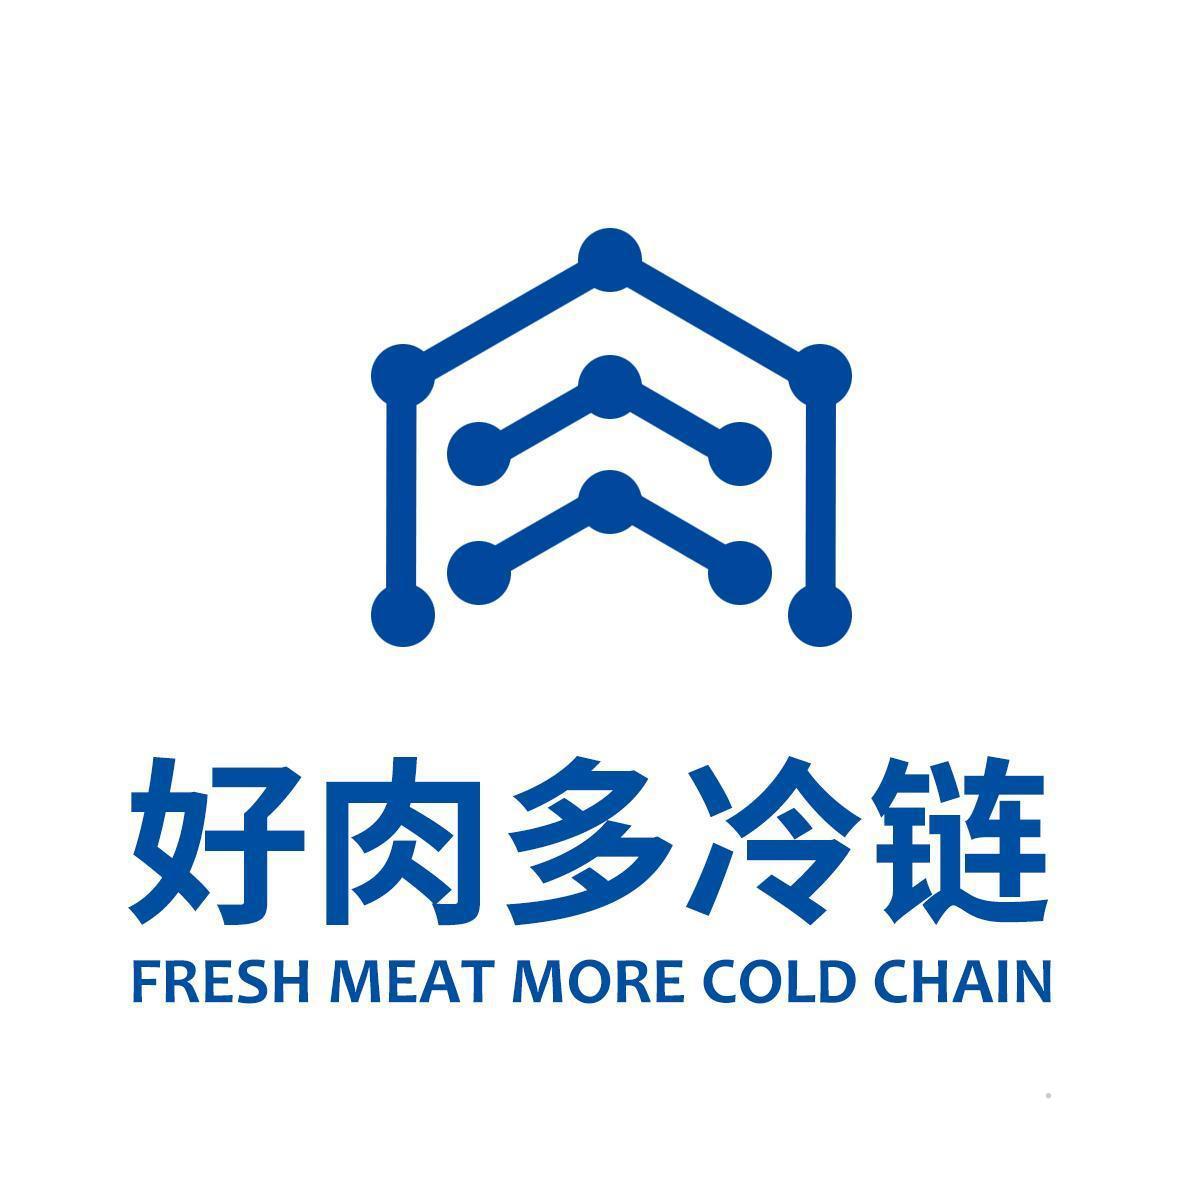 好肉多冷链 FRESH MEAT MORE COLD CHAIN